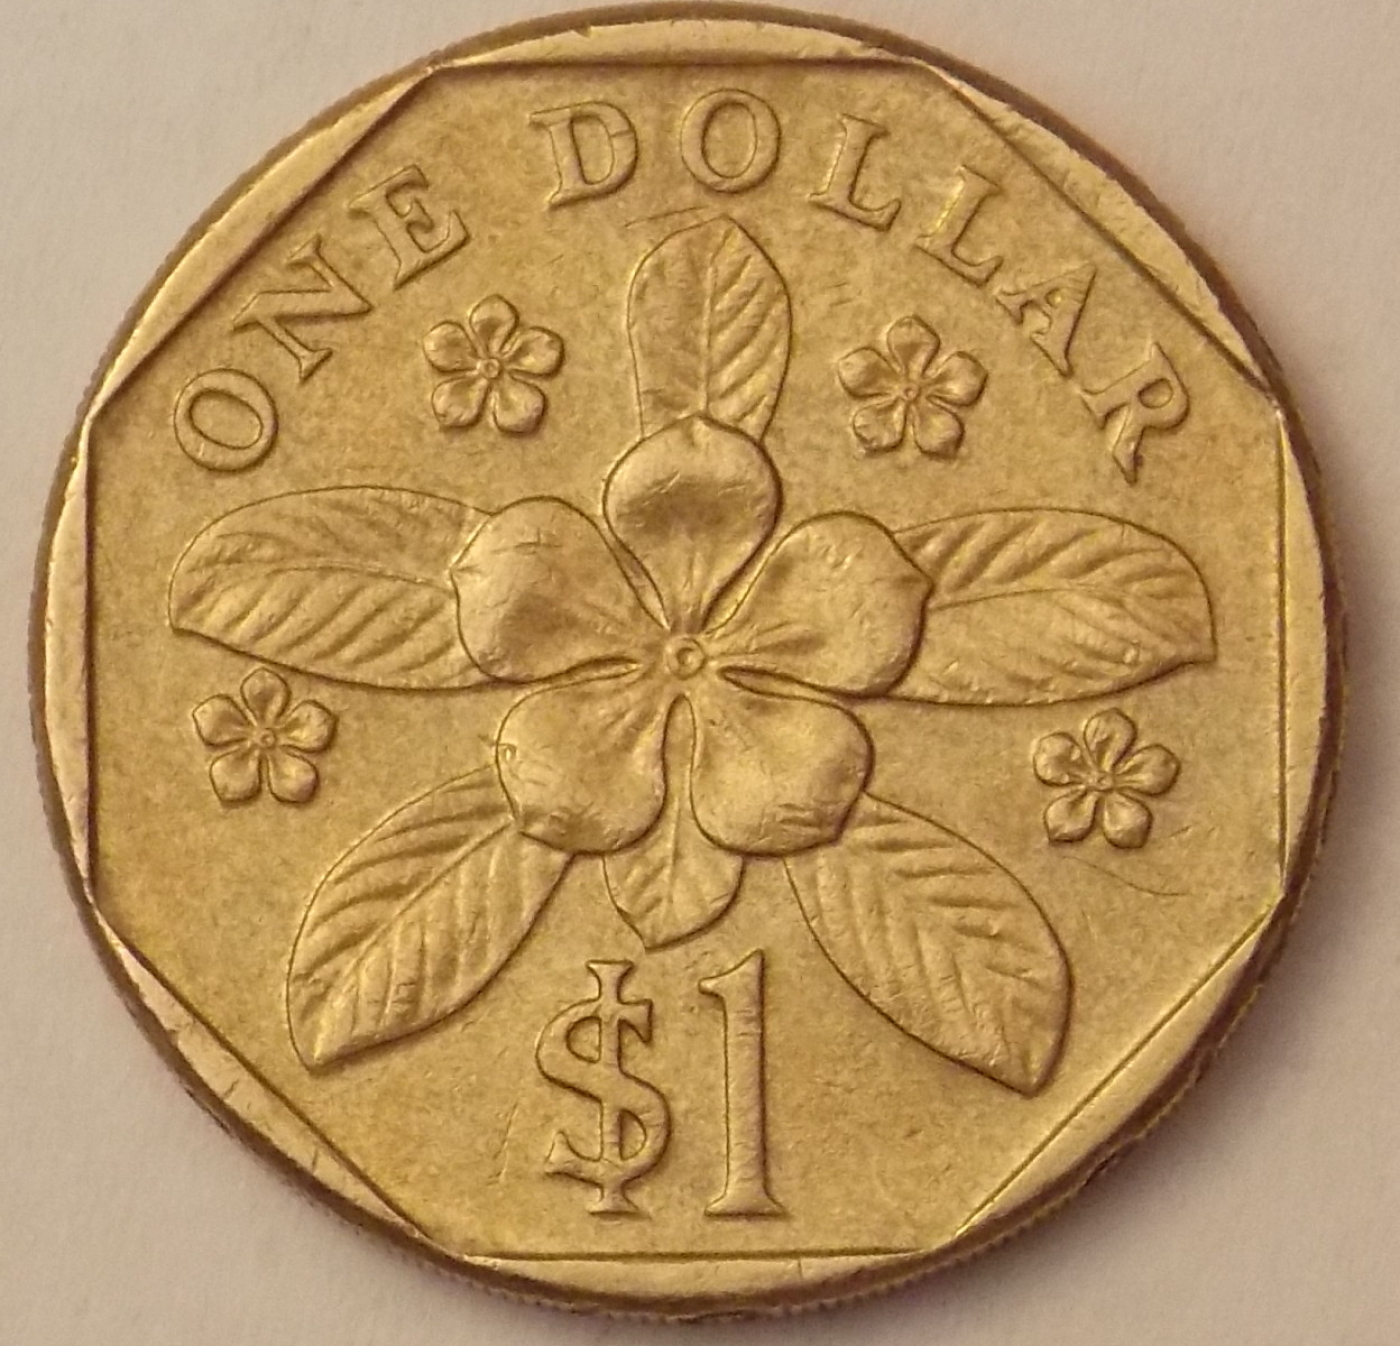 2008 Dollar Coin May 2021